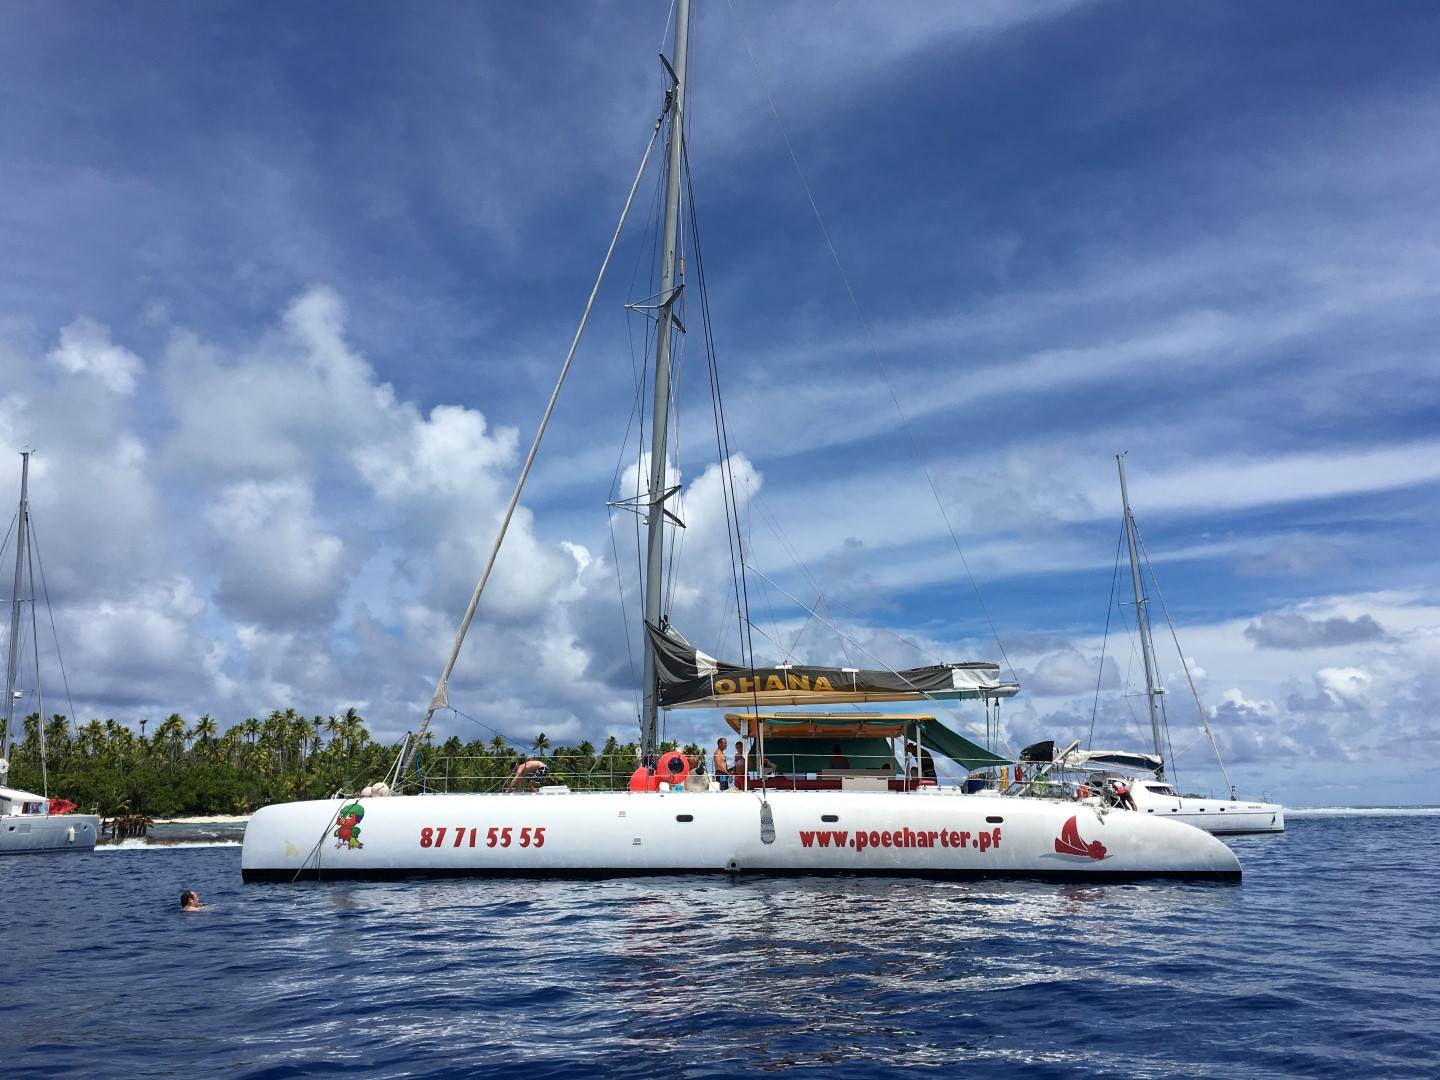 Trois catamarans neufs seront disponibles prochainement sur place pour satisfaire une clientèle de passionnés de voile, curieuse de découvrir la beauté des lagons paumotu. (Photo : Facebook Poe Charte)